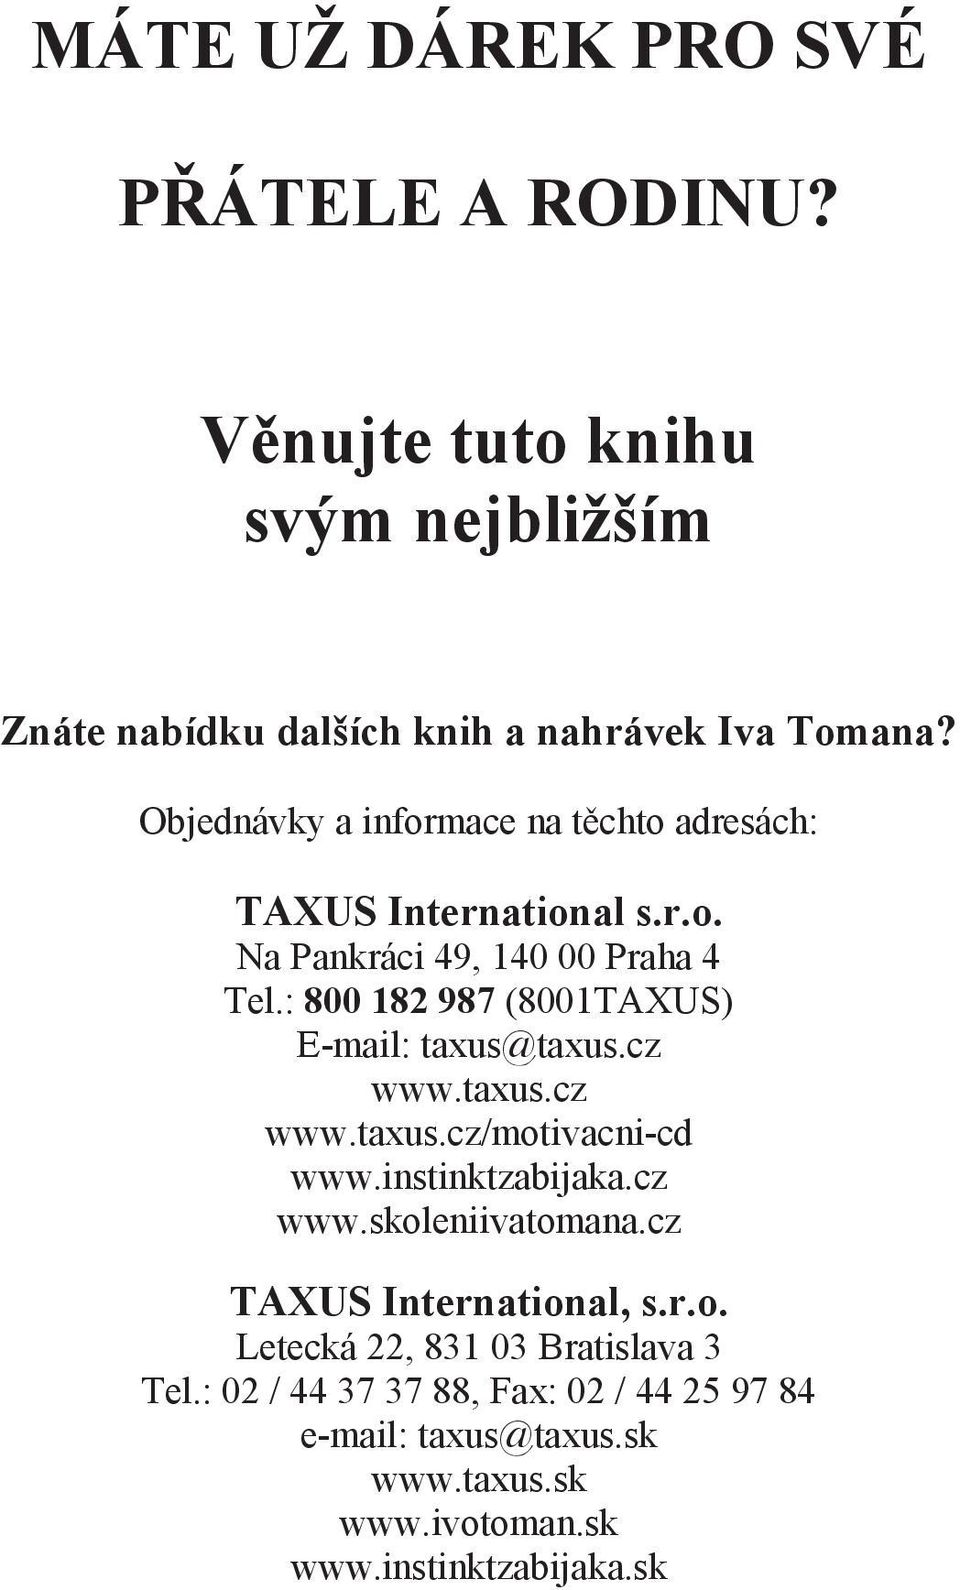 : 800 182 987 (8001TAXUS) E-mail: taxus@taxus.cz www.taxus.cz www.taxus.cz/motivacni-cd www.instinktzabijaka.cz www.skoleniivatomana.